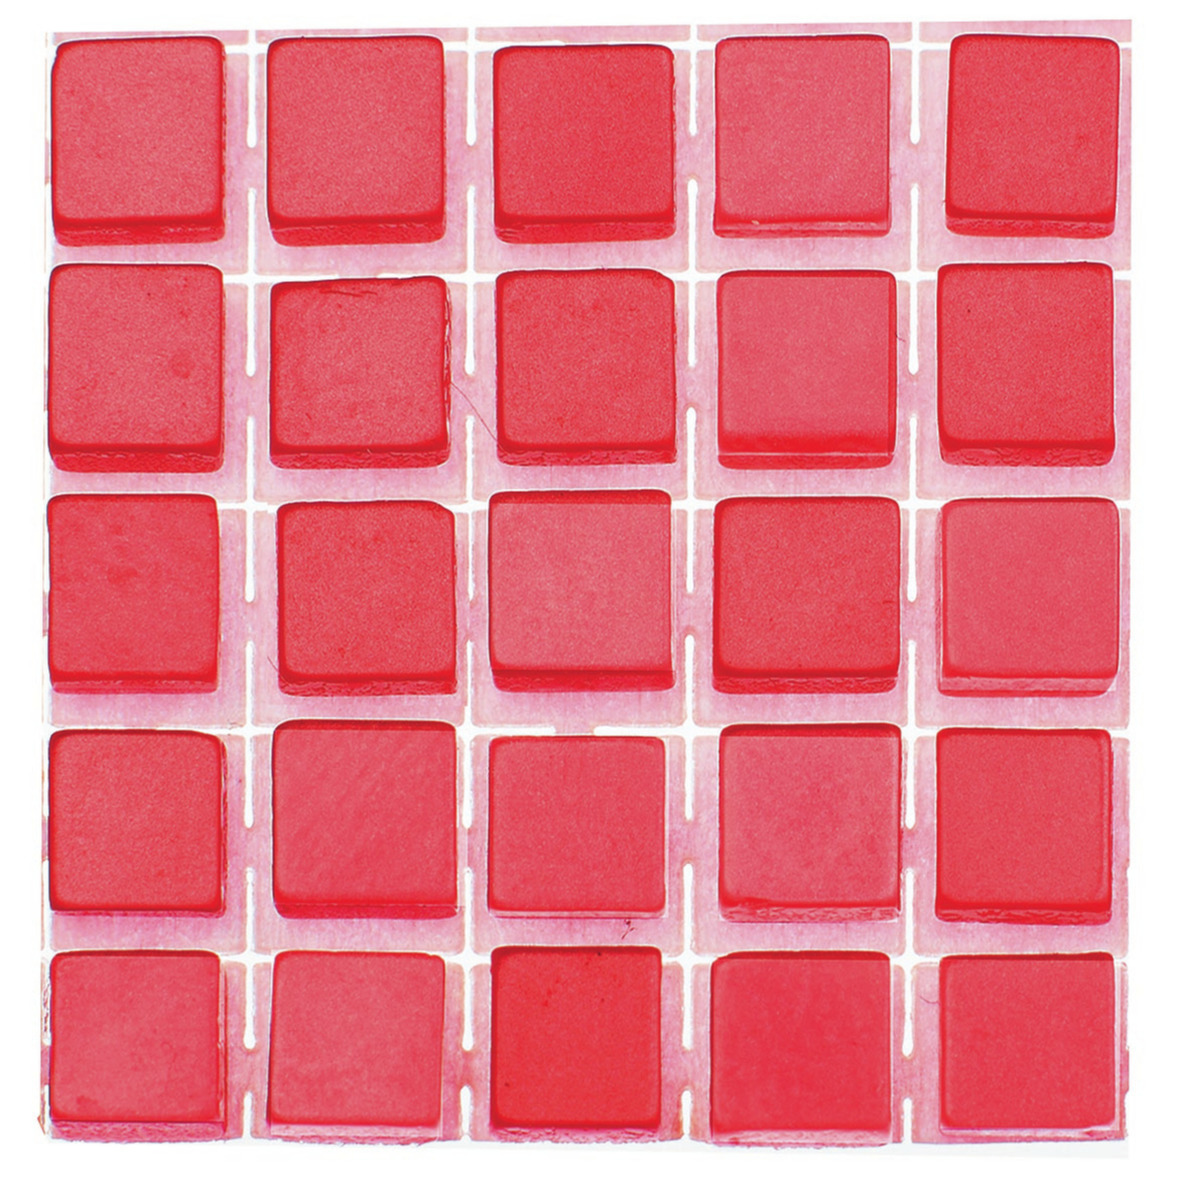 119x stuks mozaieken maken steentjes-tegels kleur rood 5 x 5 x 2 mm